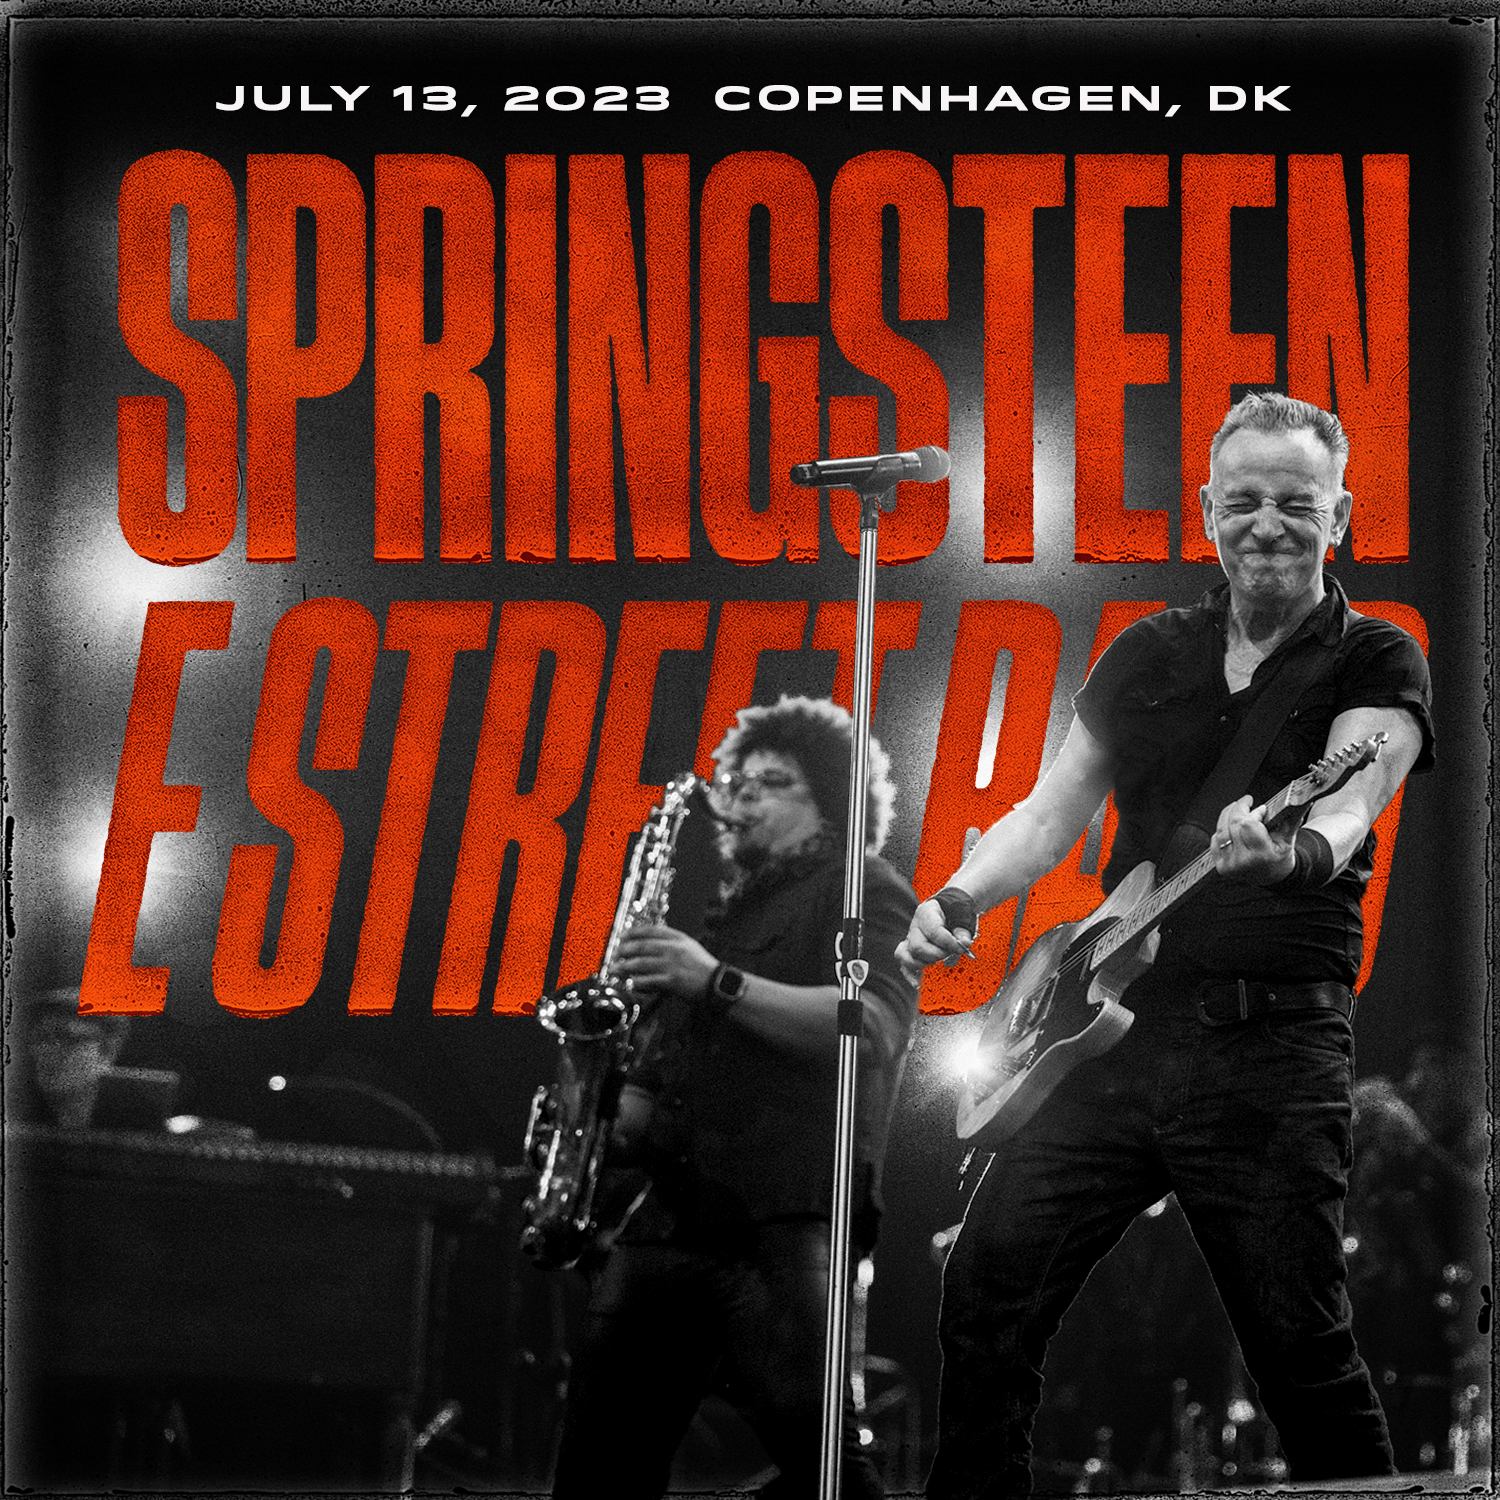 Bruce Springsteen & The E Street Band - 2023 - 13 July - Parken, Copenhagen, DK